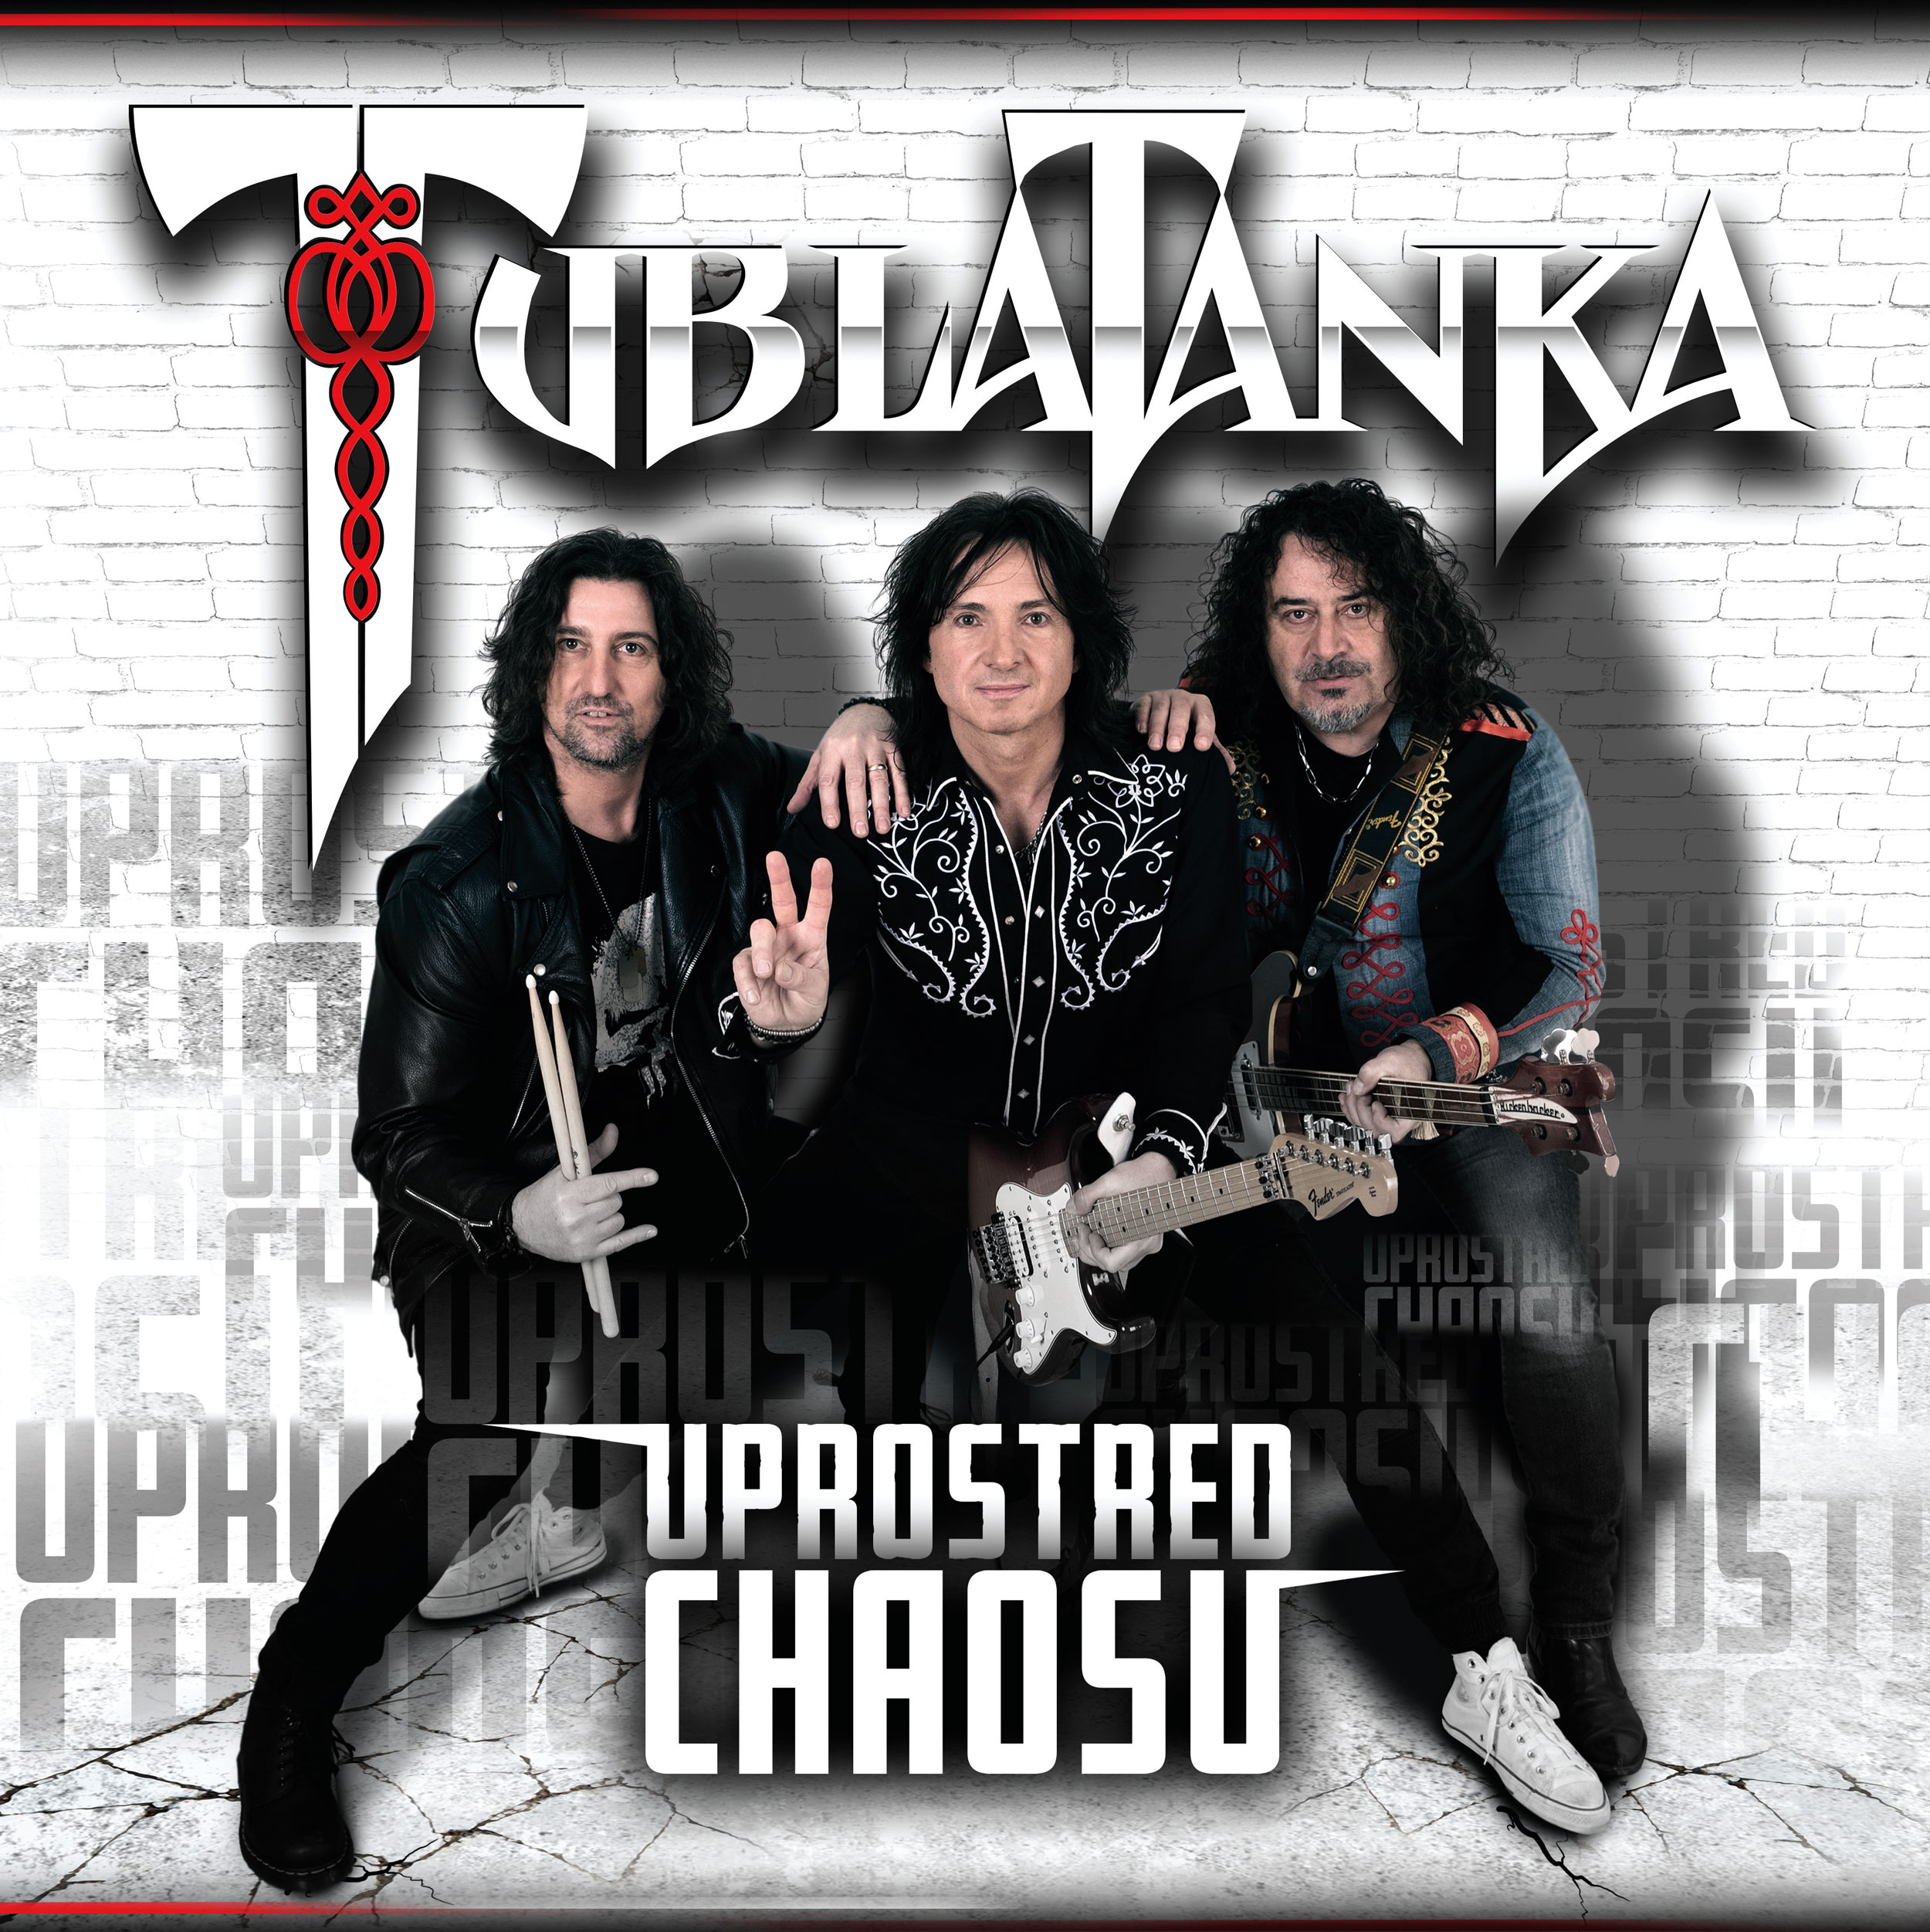 Tublatanka vydáva dlhoočakávaný album Uprostred chaosu a predstavuje novú skladbu Dobrí priatelia, ktorou chce spájať ľudí